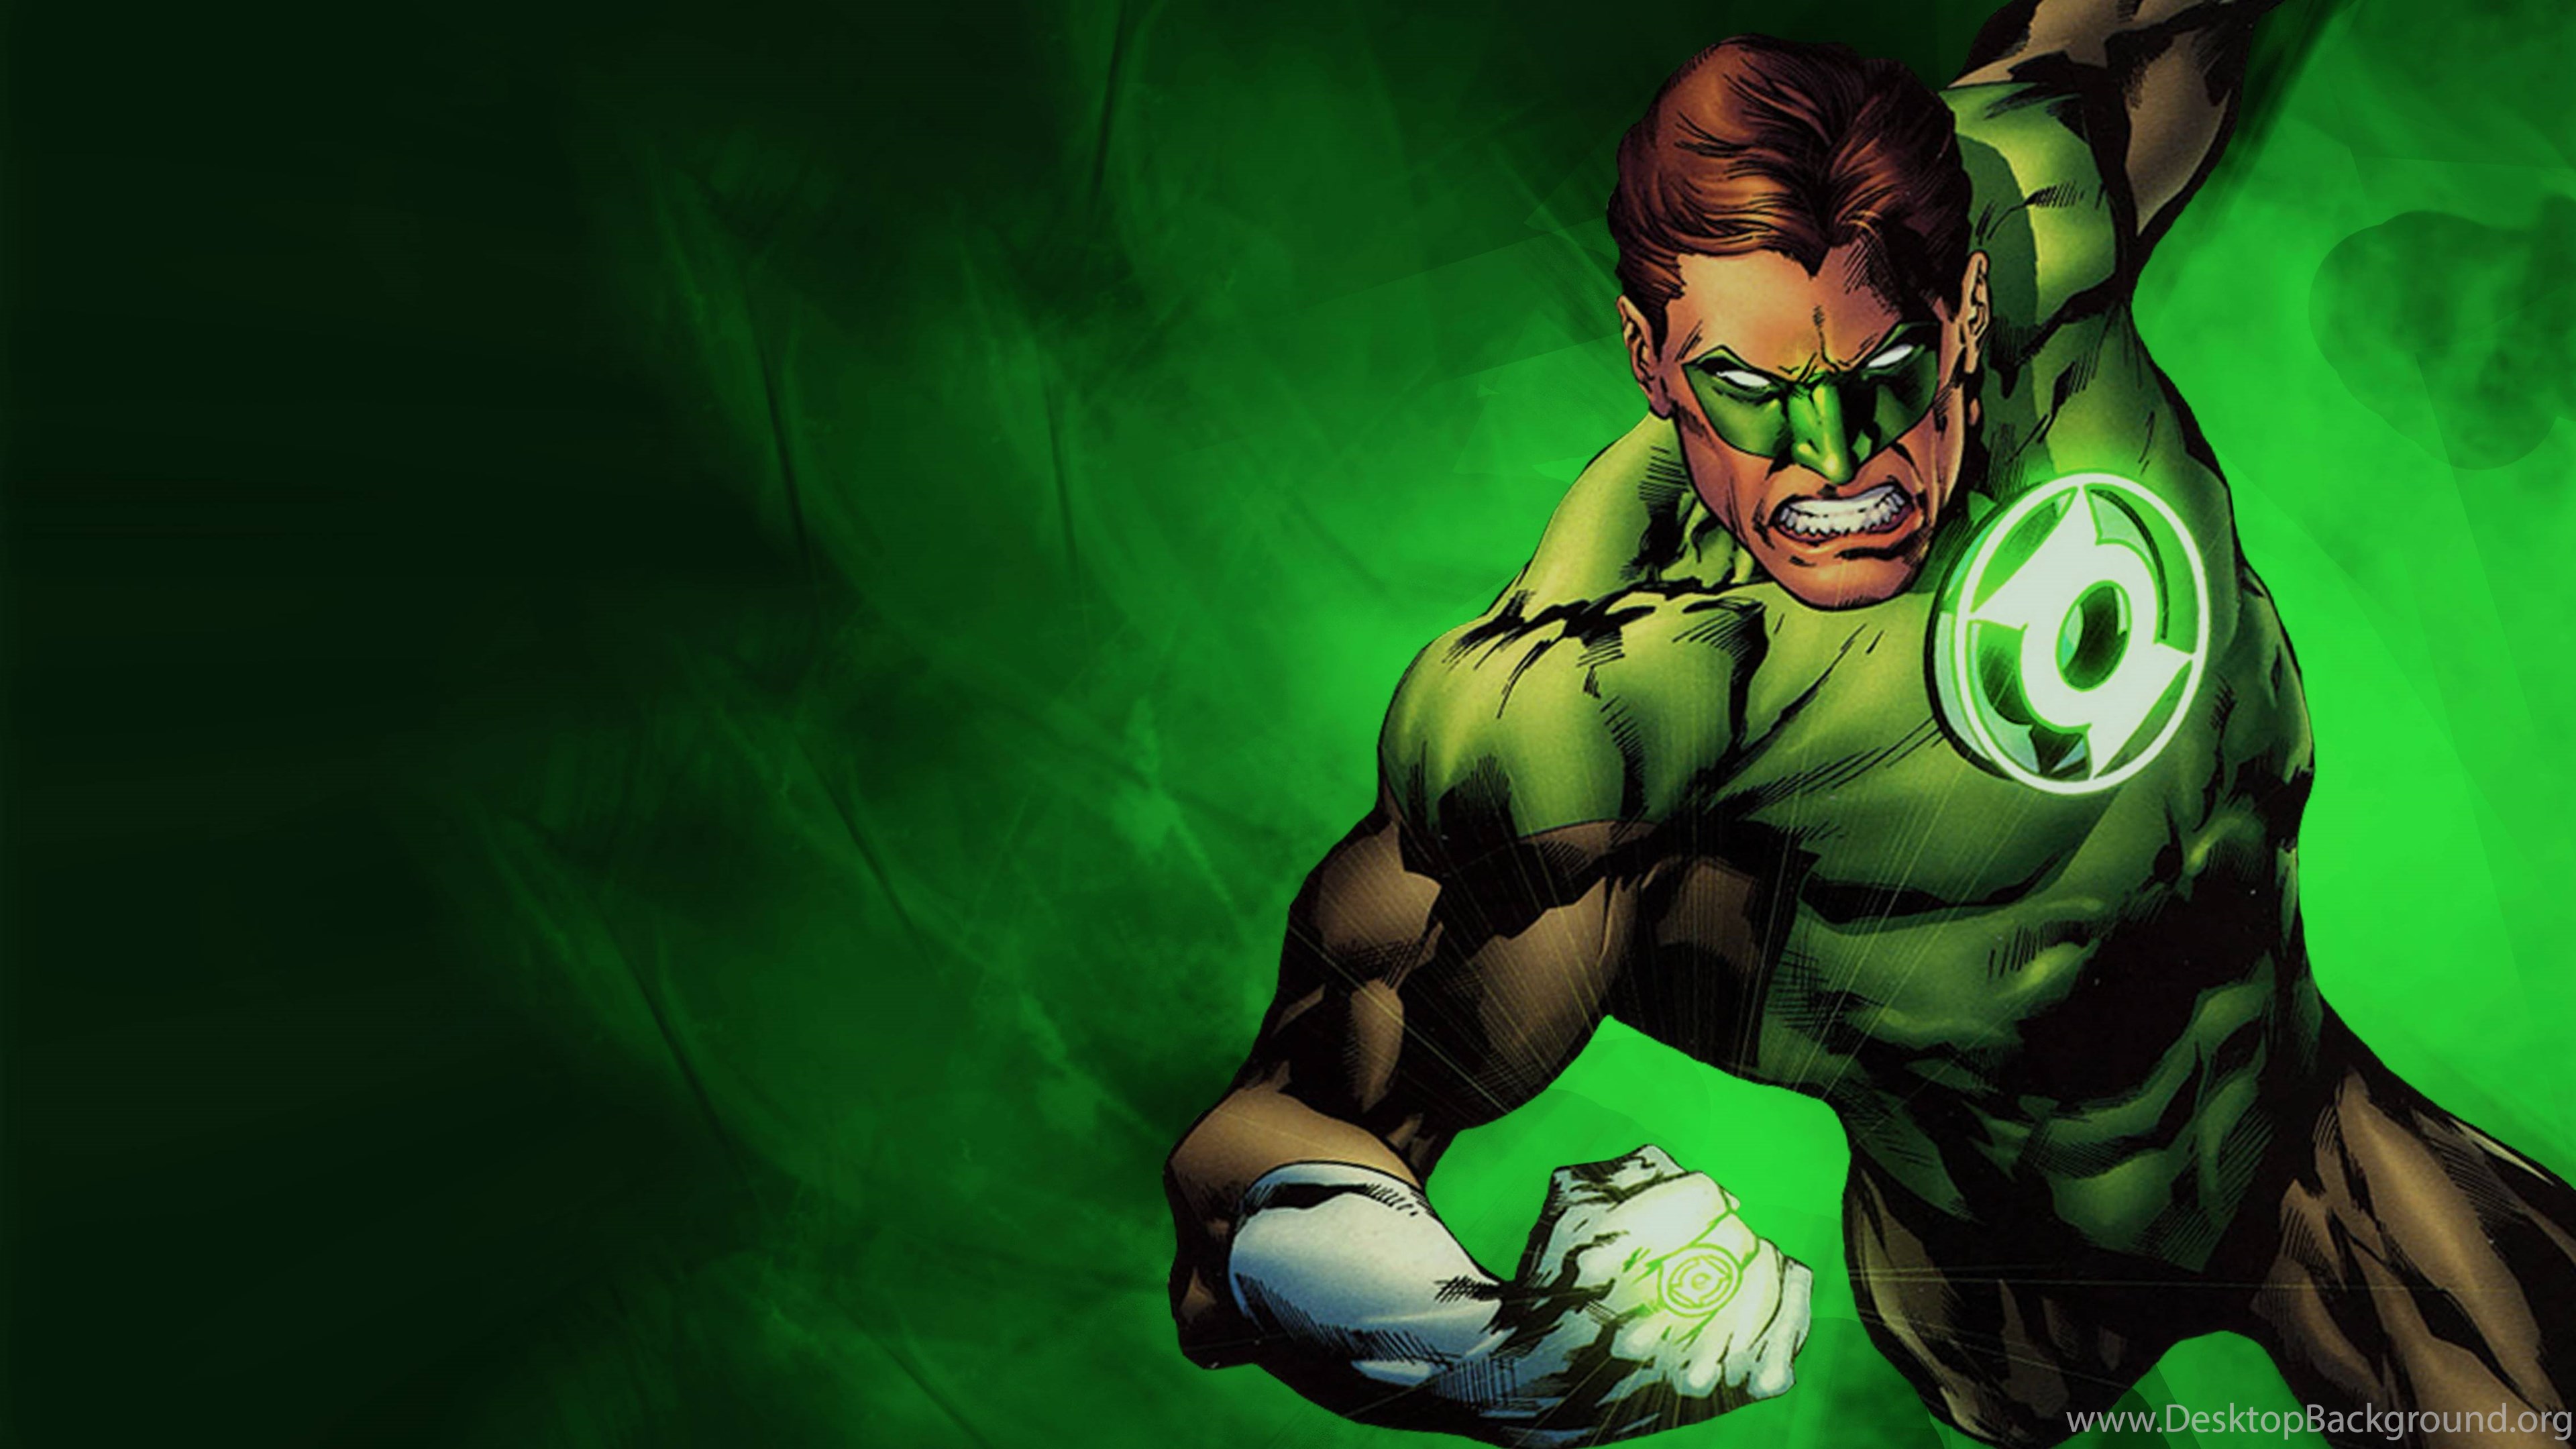 緑のランタンの壁紙,架空の人物,スーパーヒーロー,超悪役,ヒーロー,図